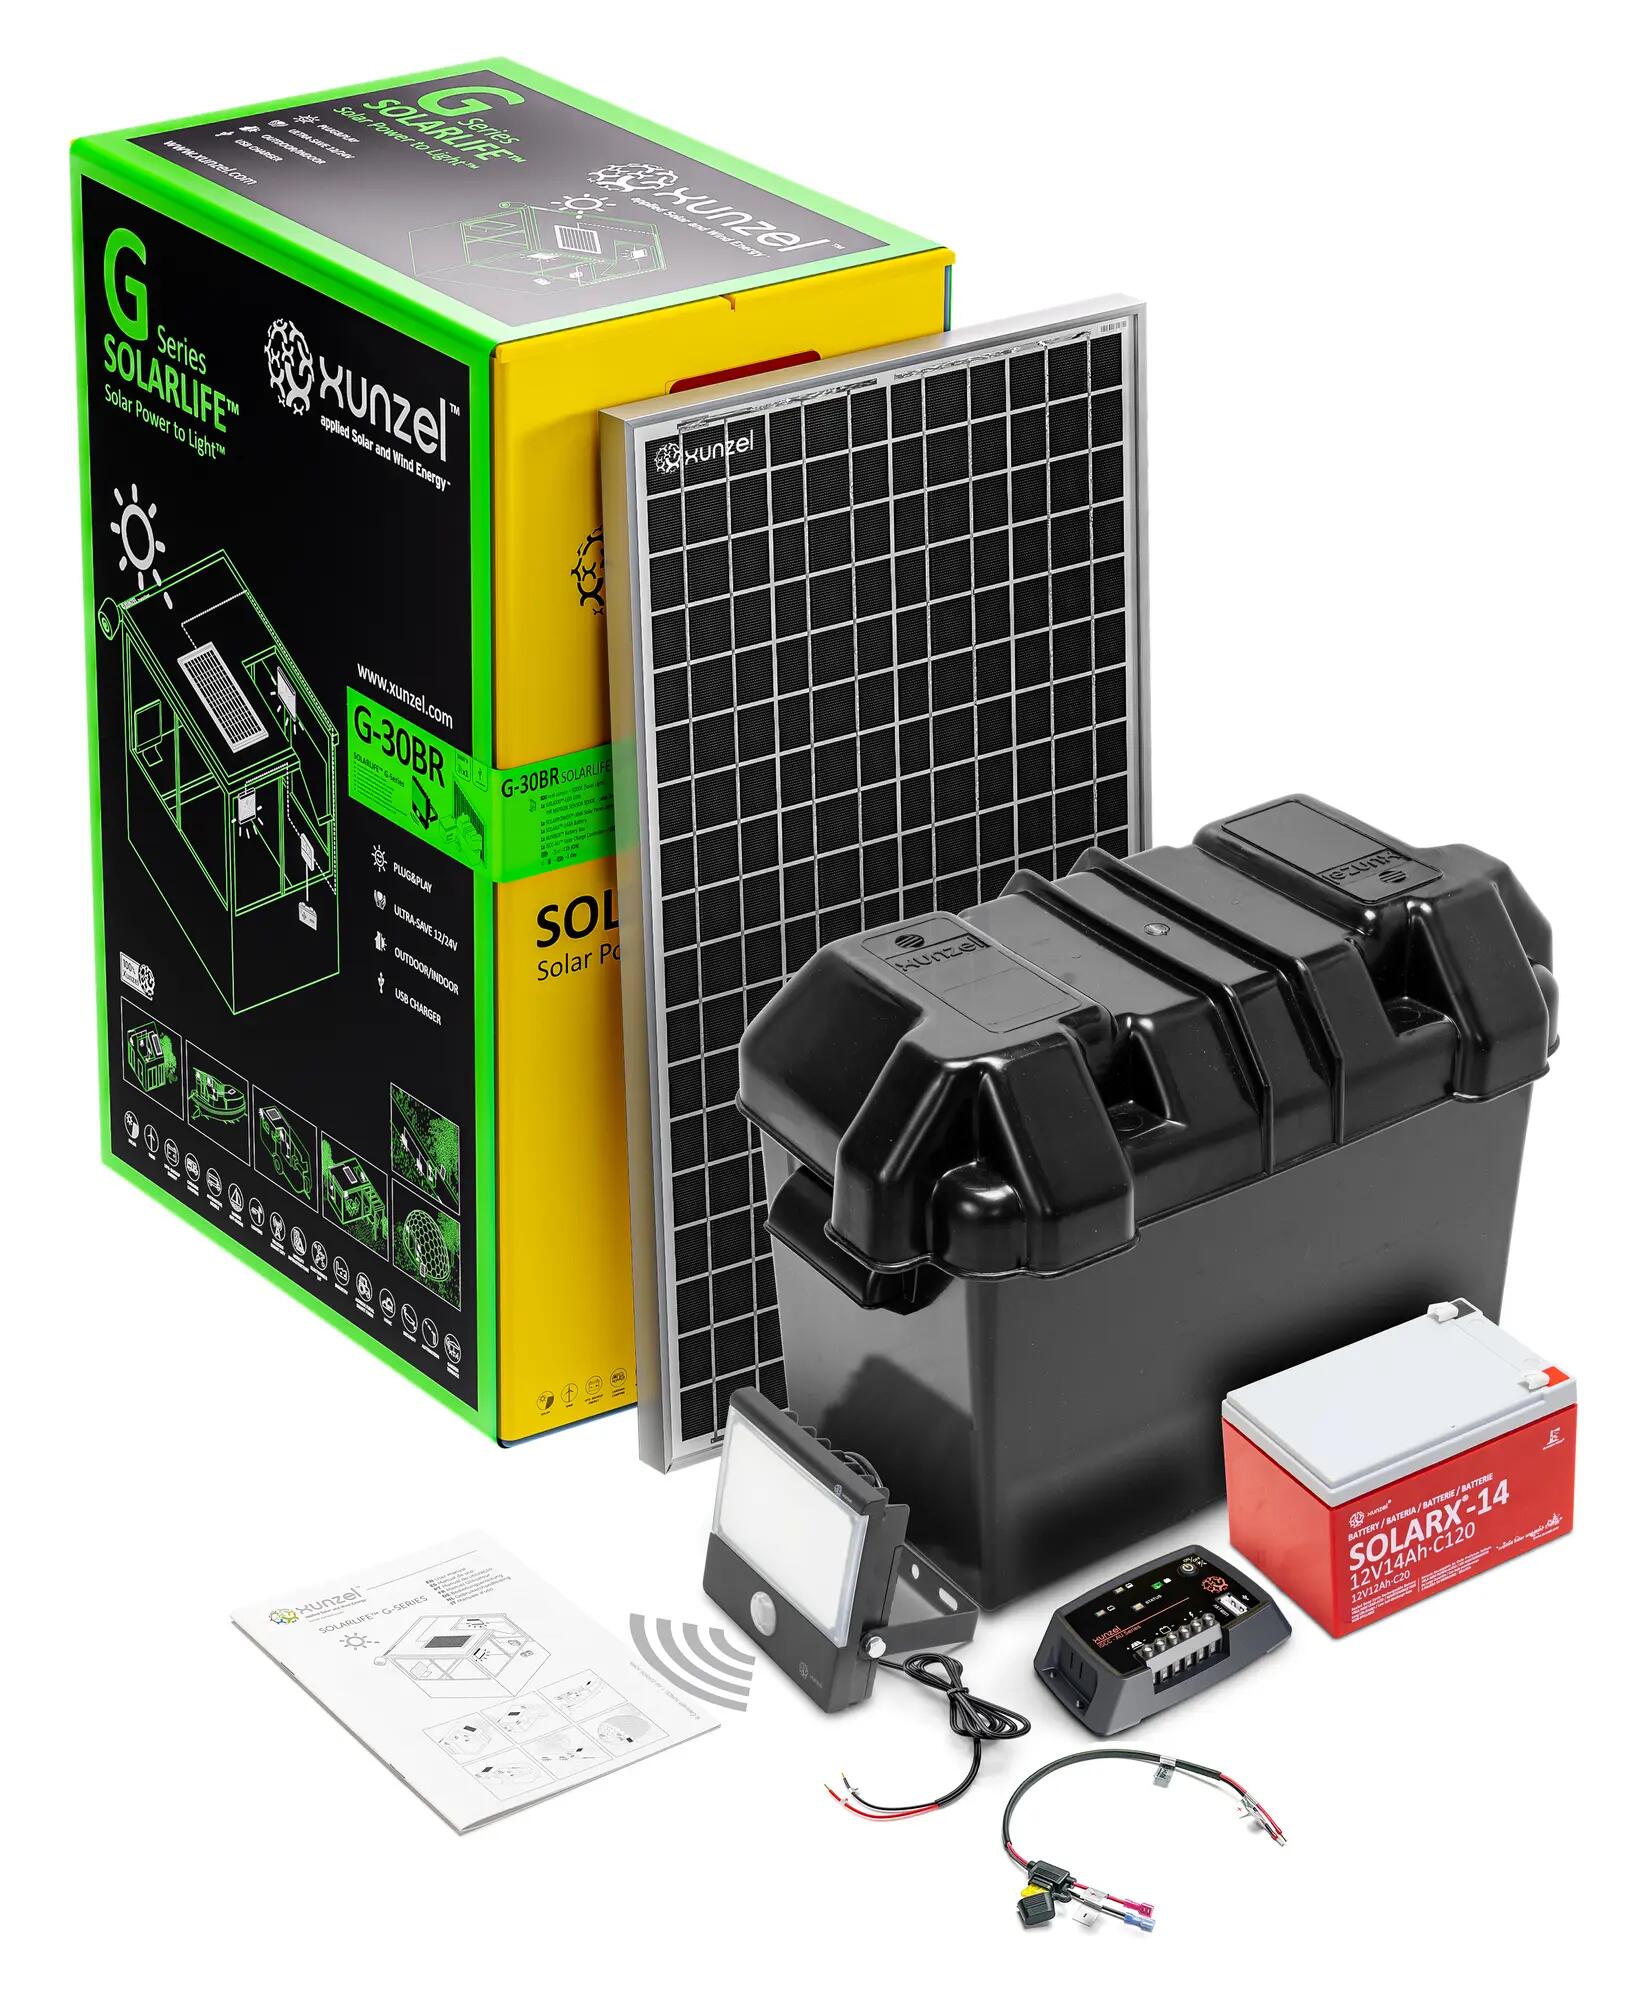 Kit solar de iluminación led de alta eficiencia solarlife-xunzel-g30br